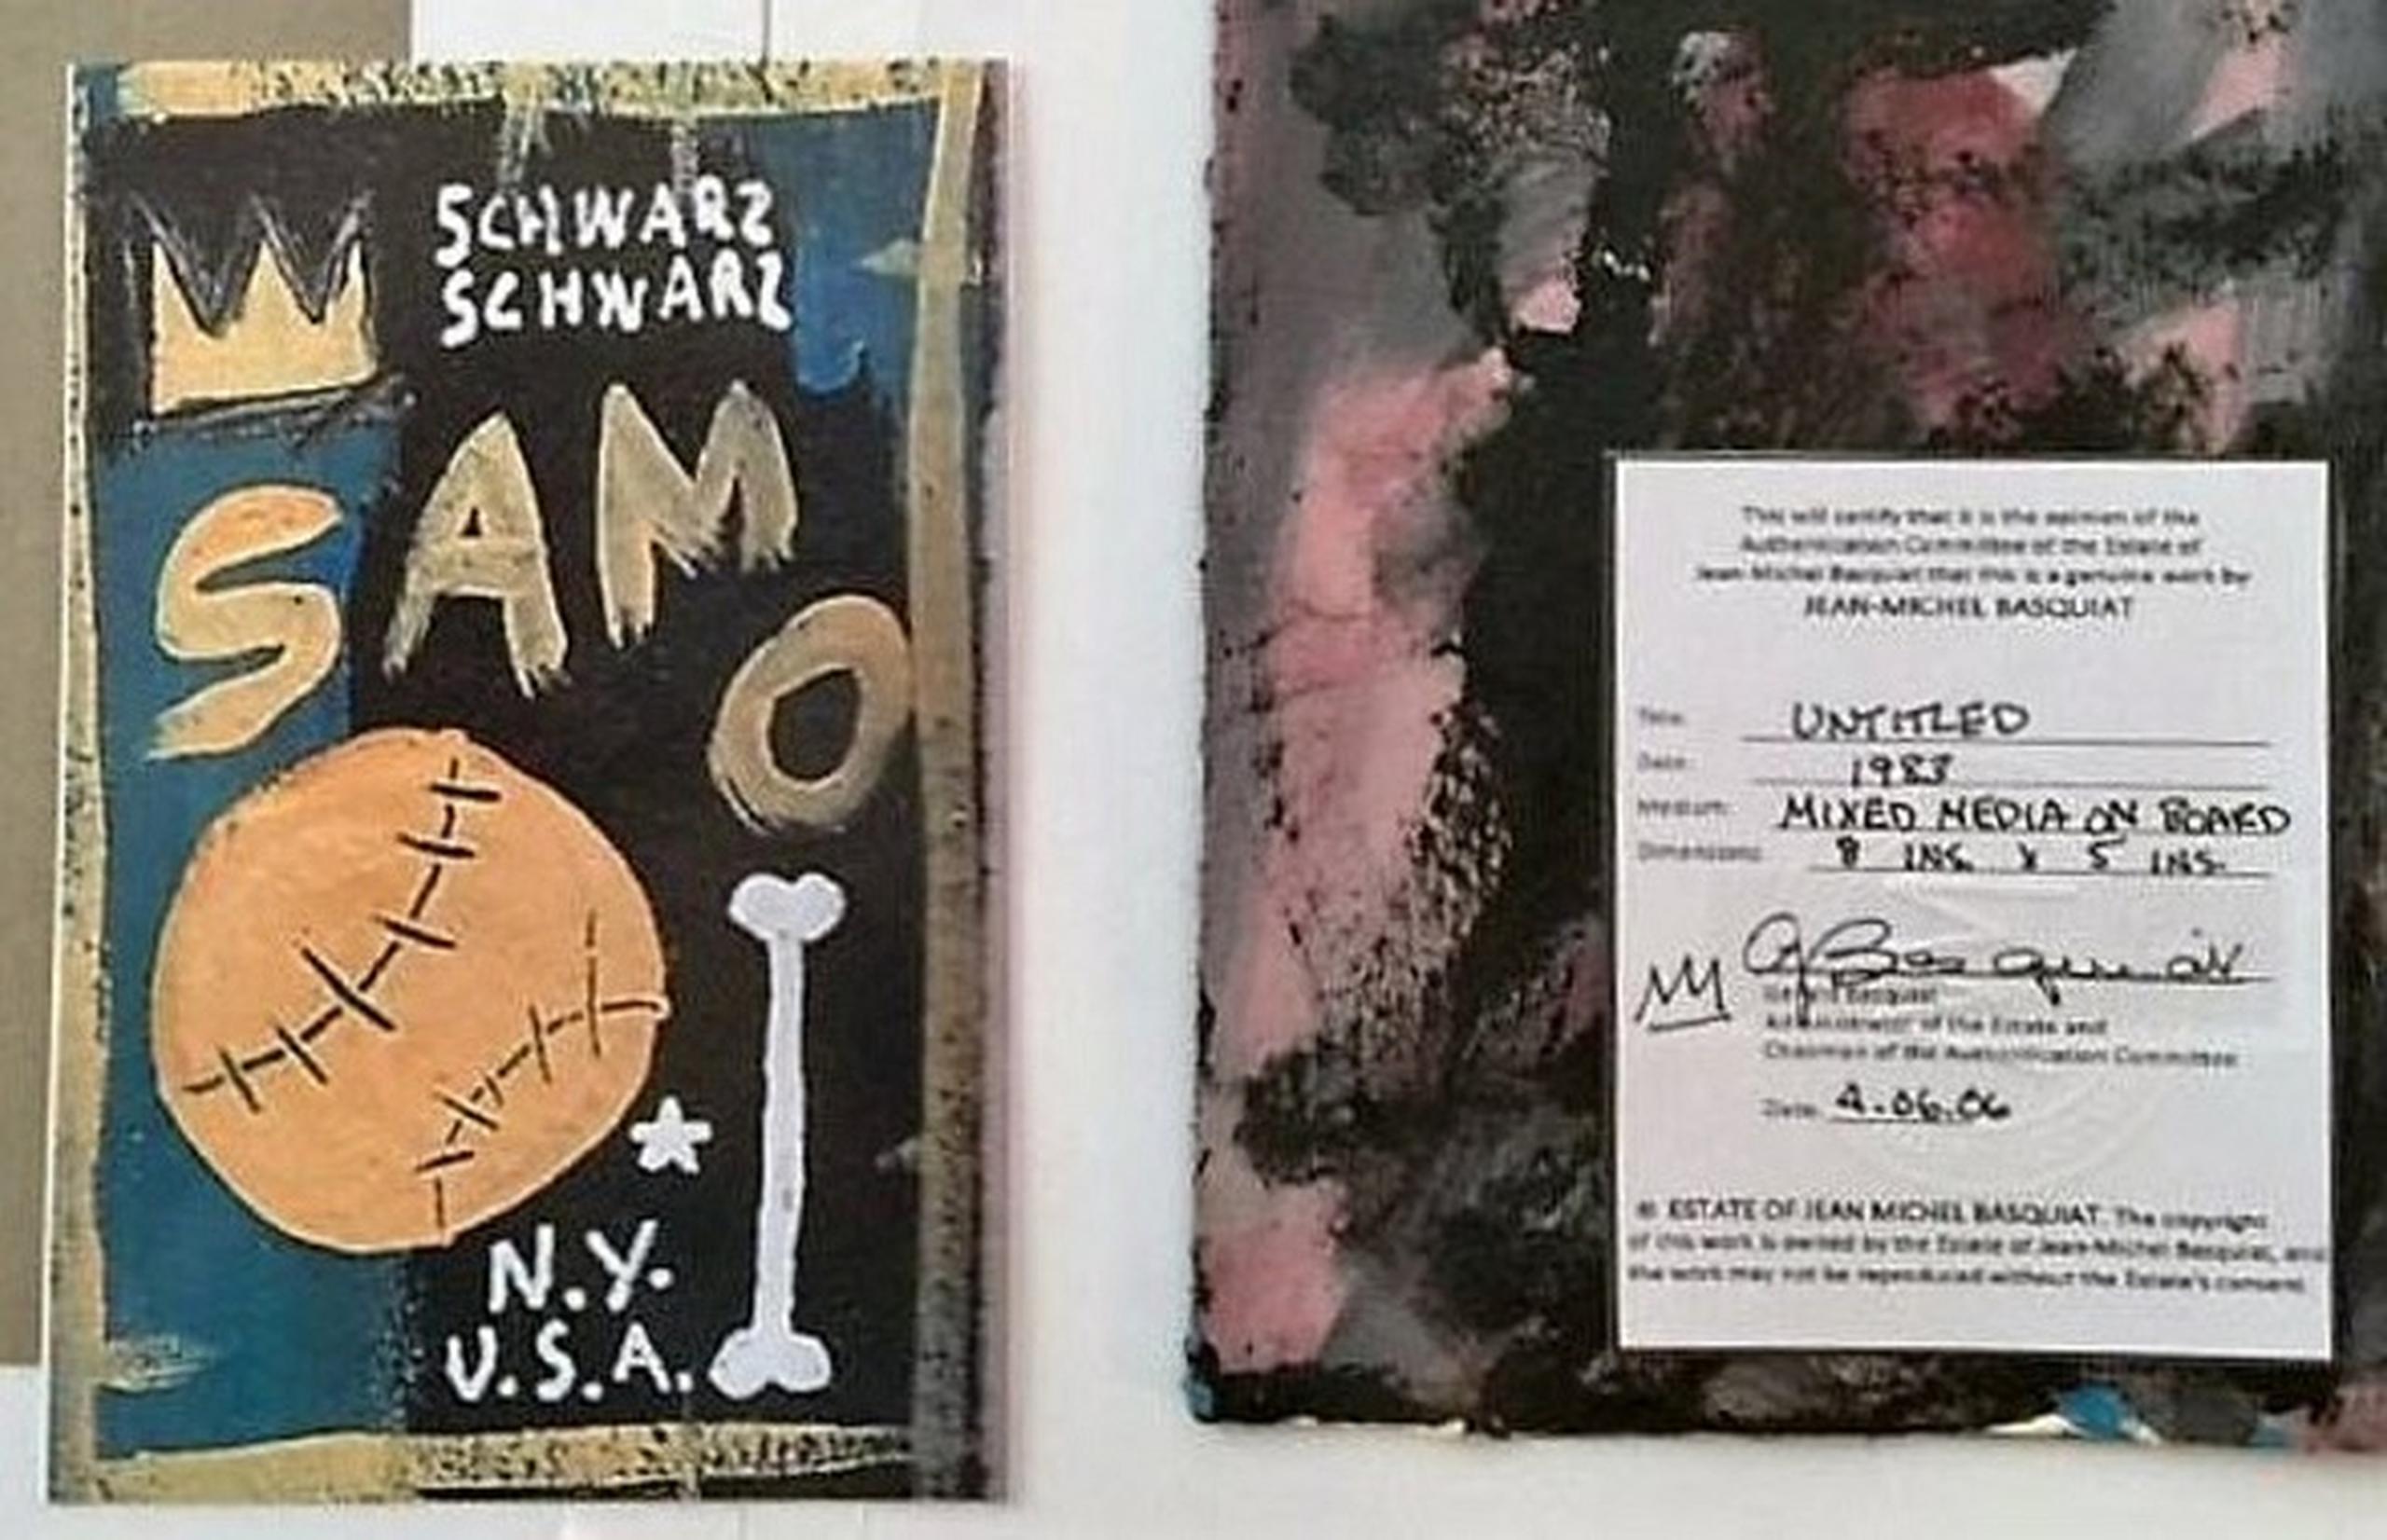 Esta fotografái de evidencia proporcionada por la fiscalía de Calfiornia presenta una obra falsificada de Jean-Michel Basquiat